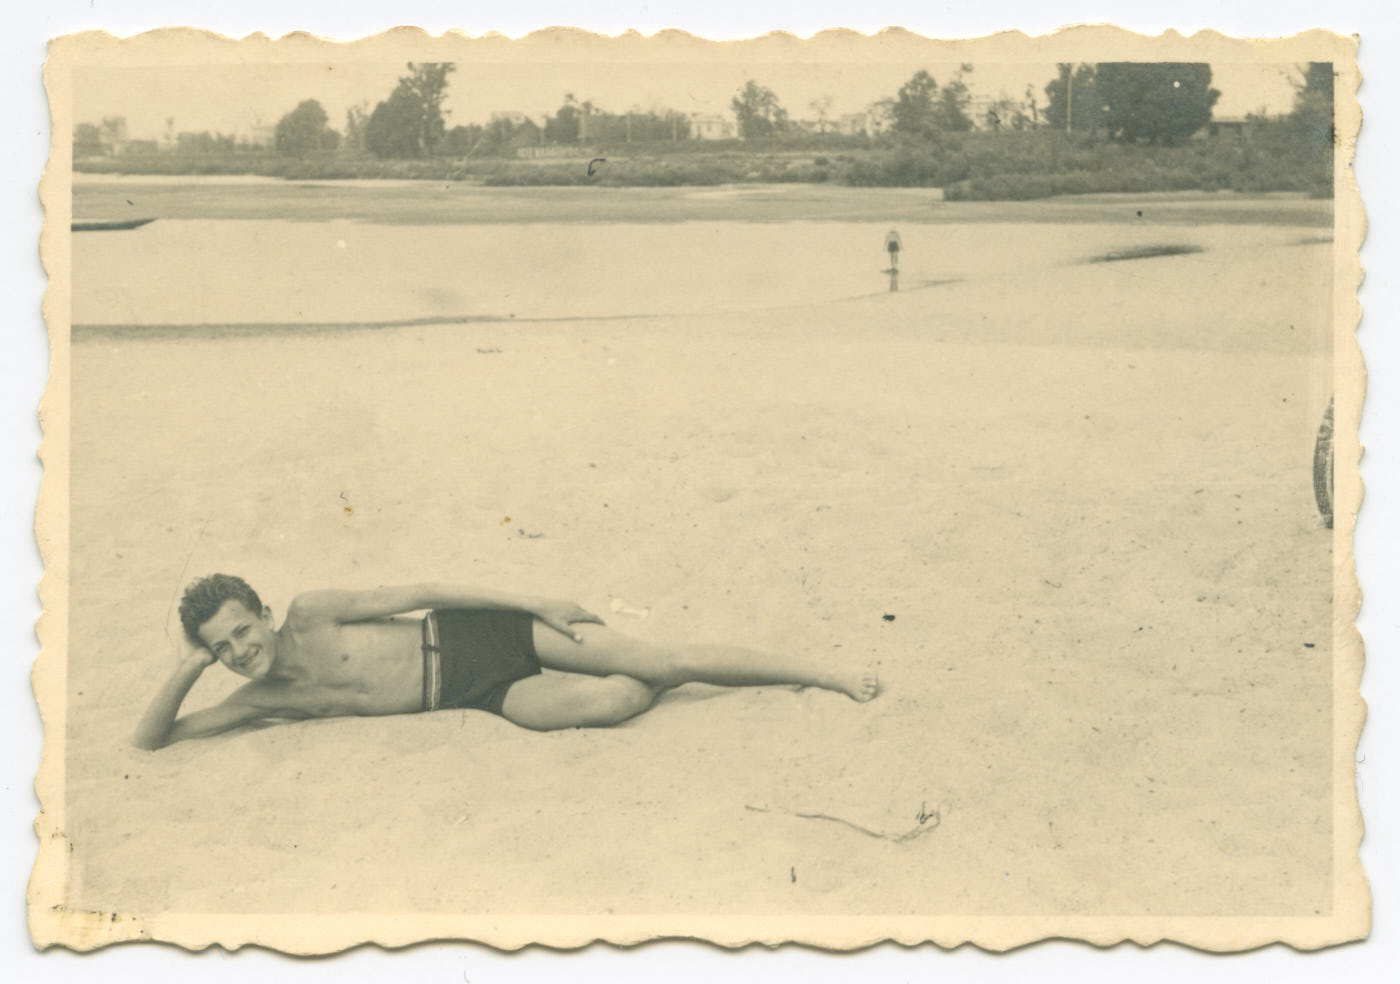 Fotografia. Nad brzegiem Wisły, na piaszczystej plaży młody chłopak leży na prawym boku. Podpiera głowę na ręce, uśmiecha się. Ubrany tylko w ciemne krótkie spodenki. W tle niewysokie drzewa i krzewy.